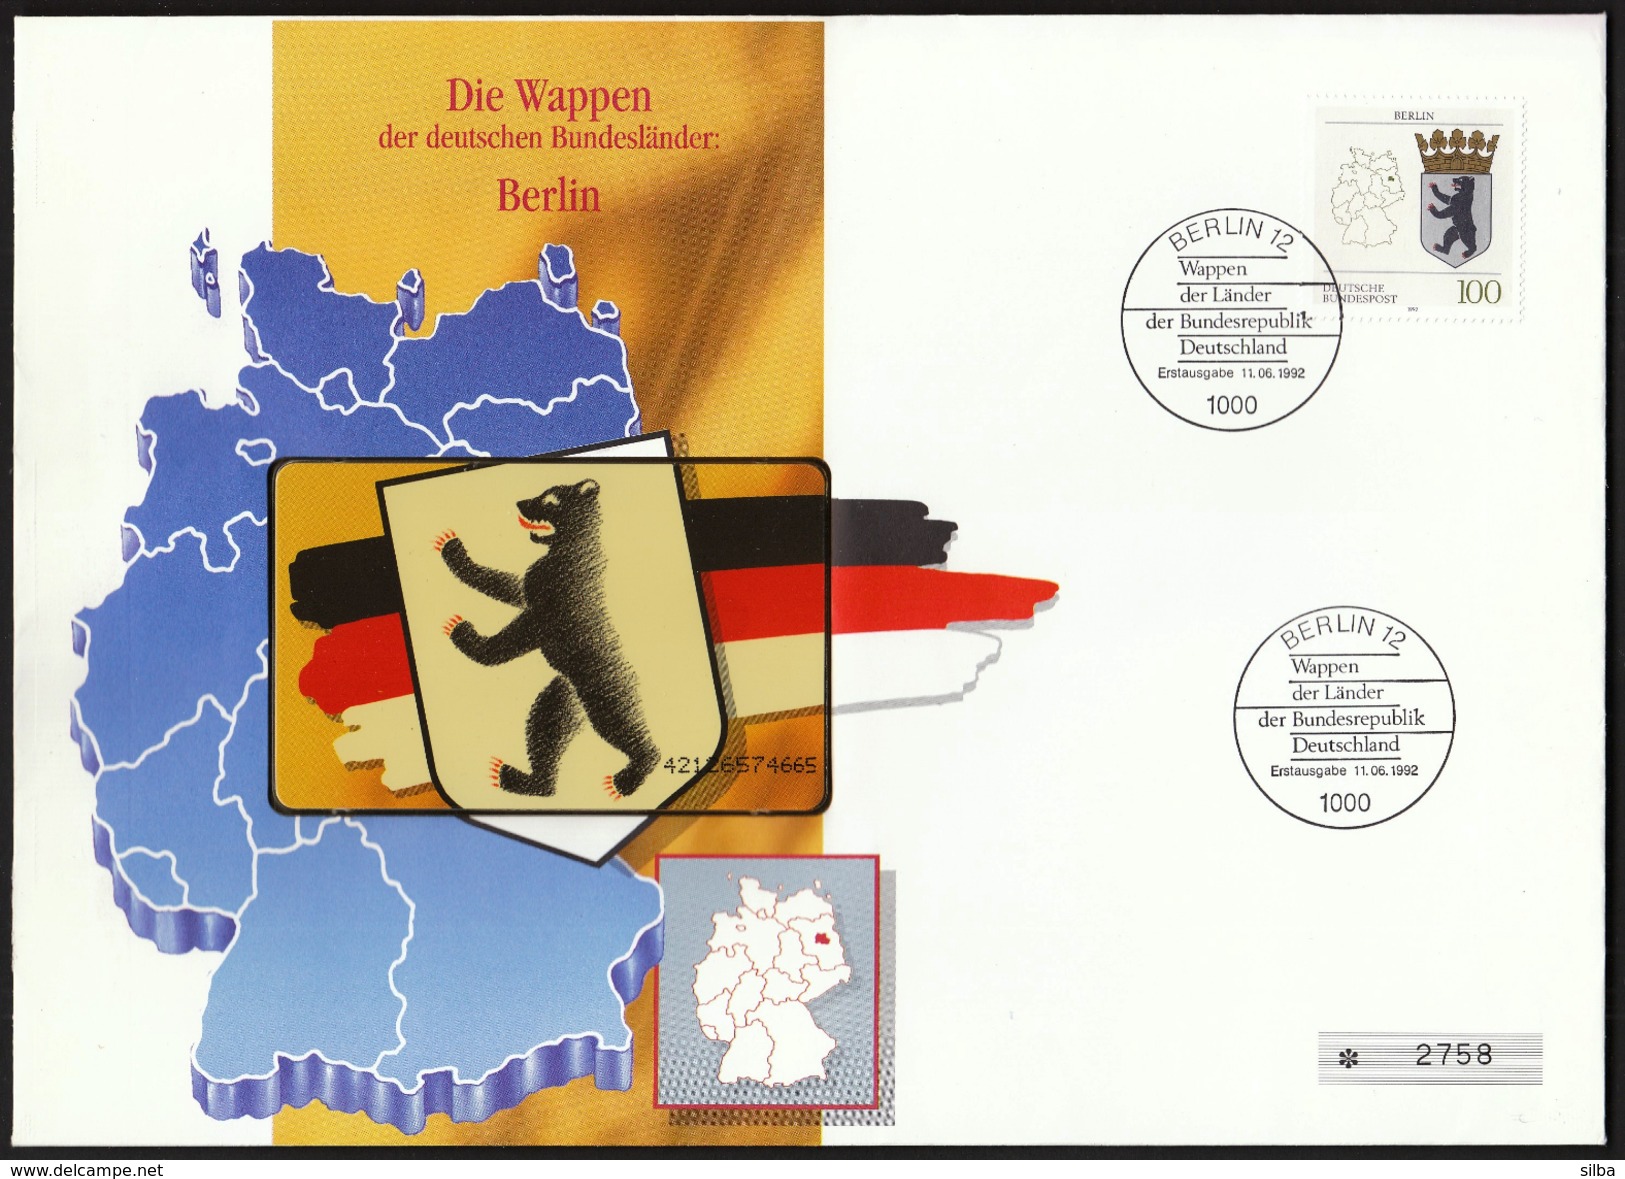 Germany Berlin 1992 / Die Wappen Der Deutschen Bundesländer / Phonecard Cover / Telefonkarten Brief - O-Series : Series Clientes Excluidos Servicio De Colección